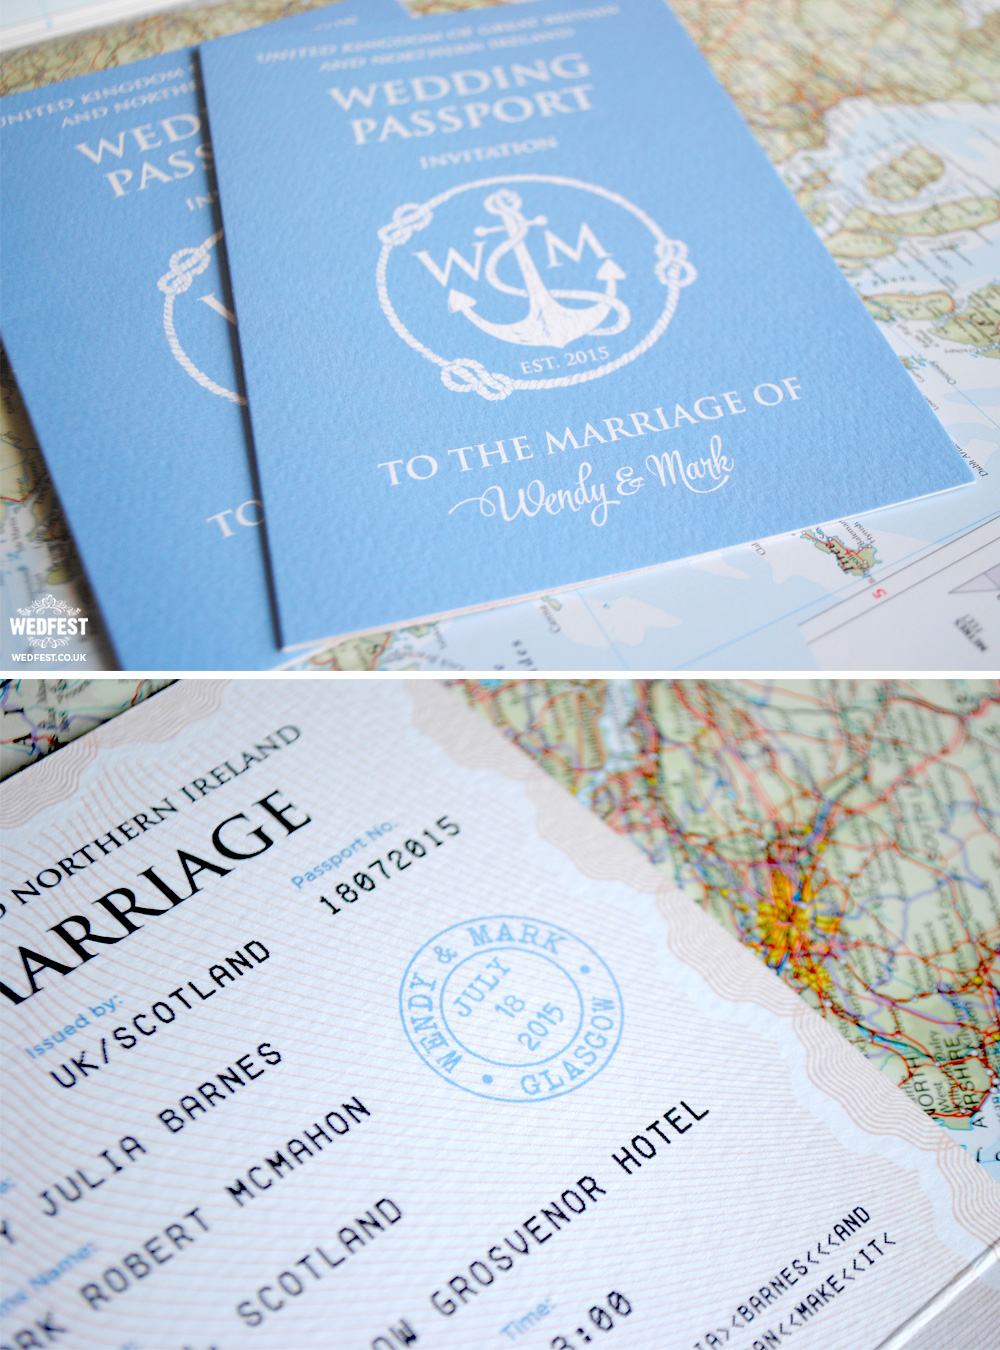 wedding passport invitation